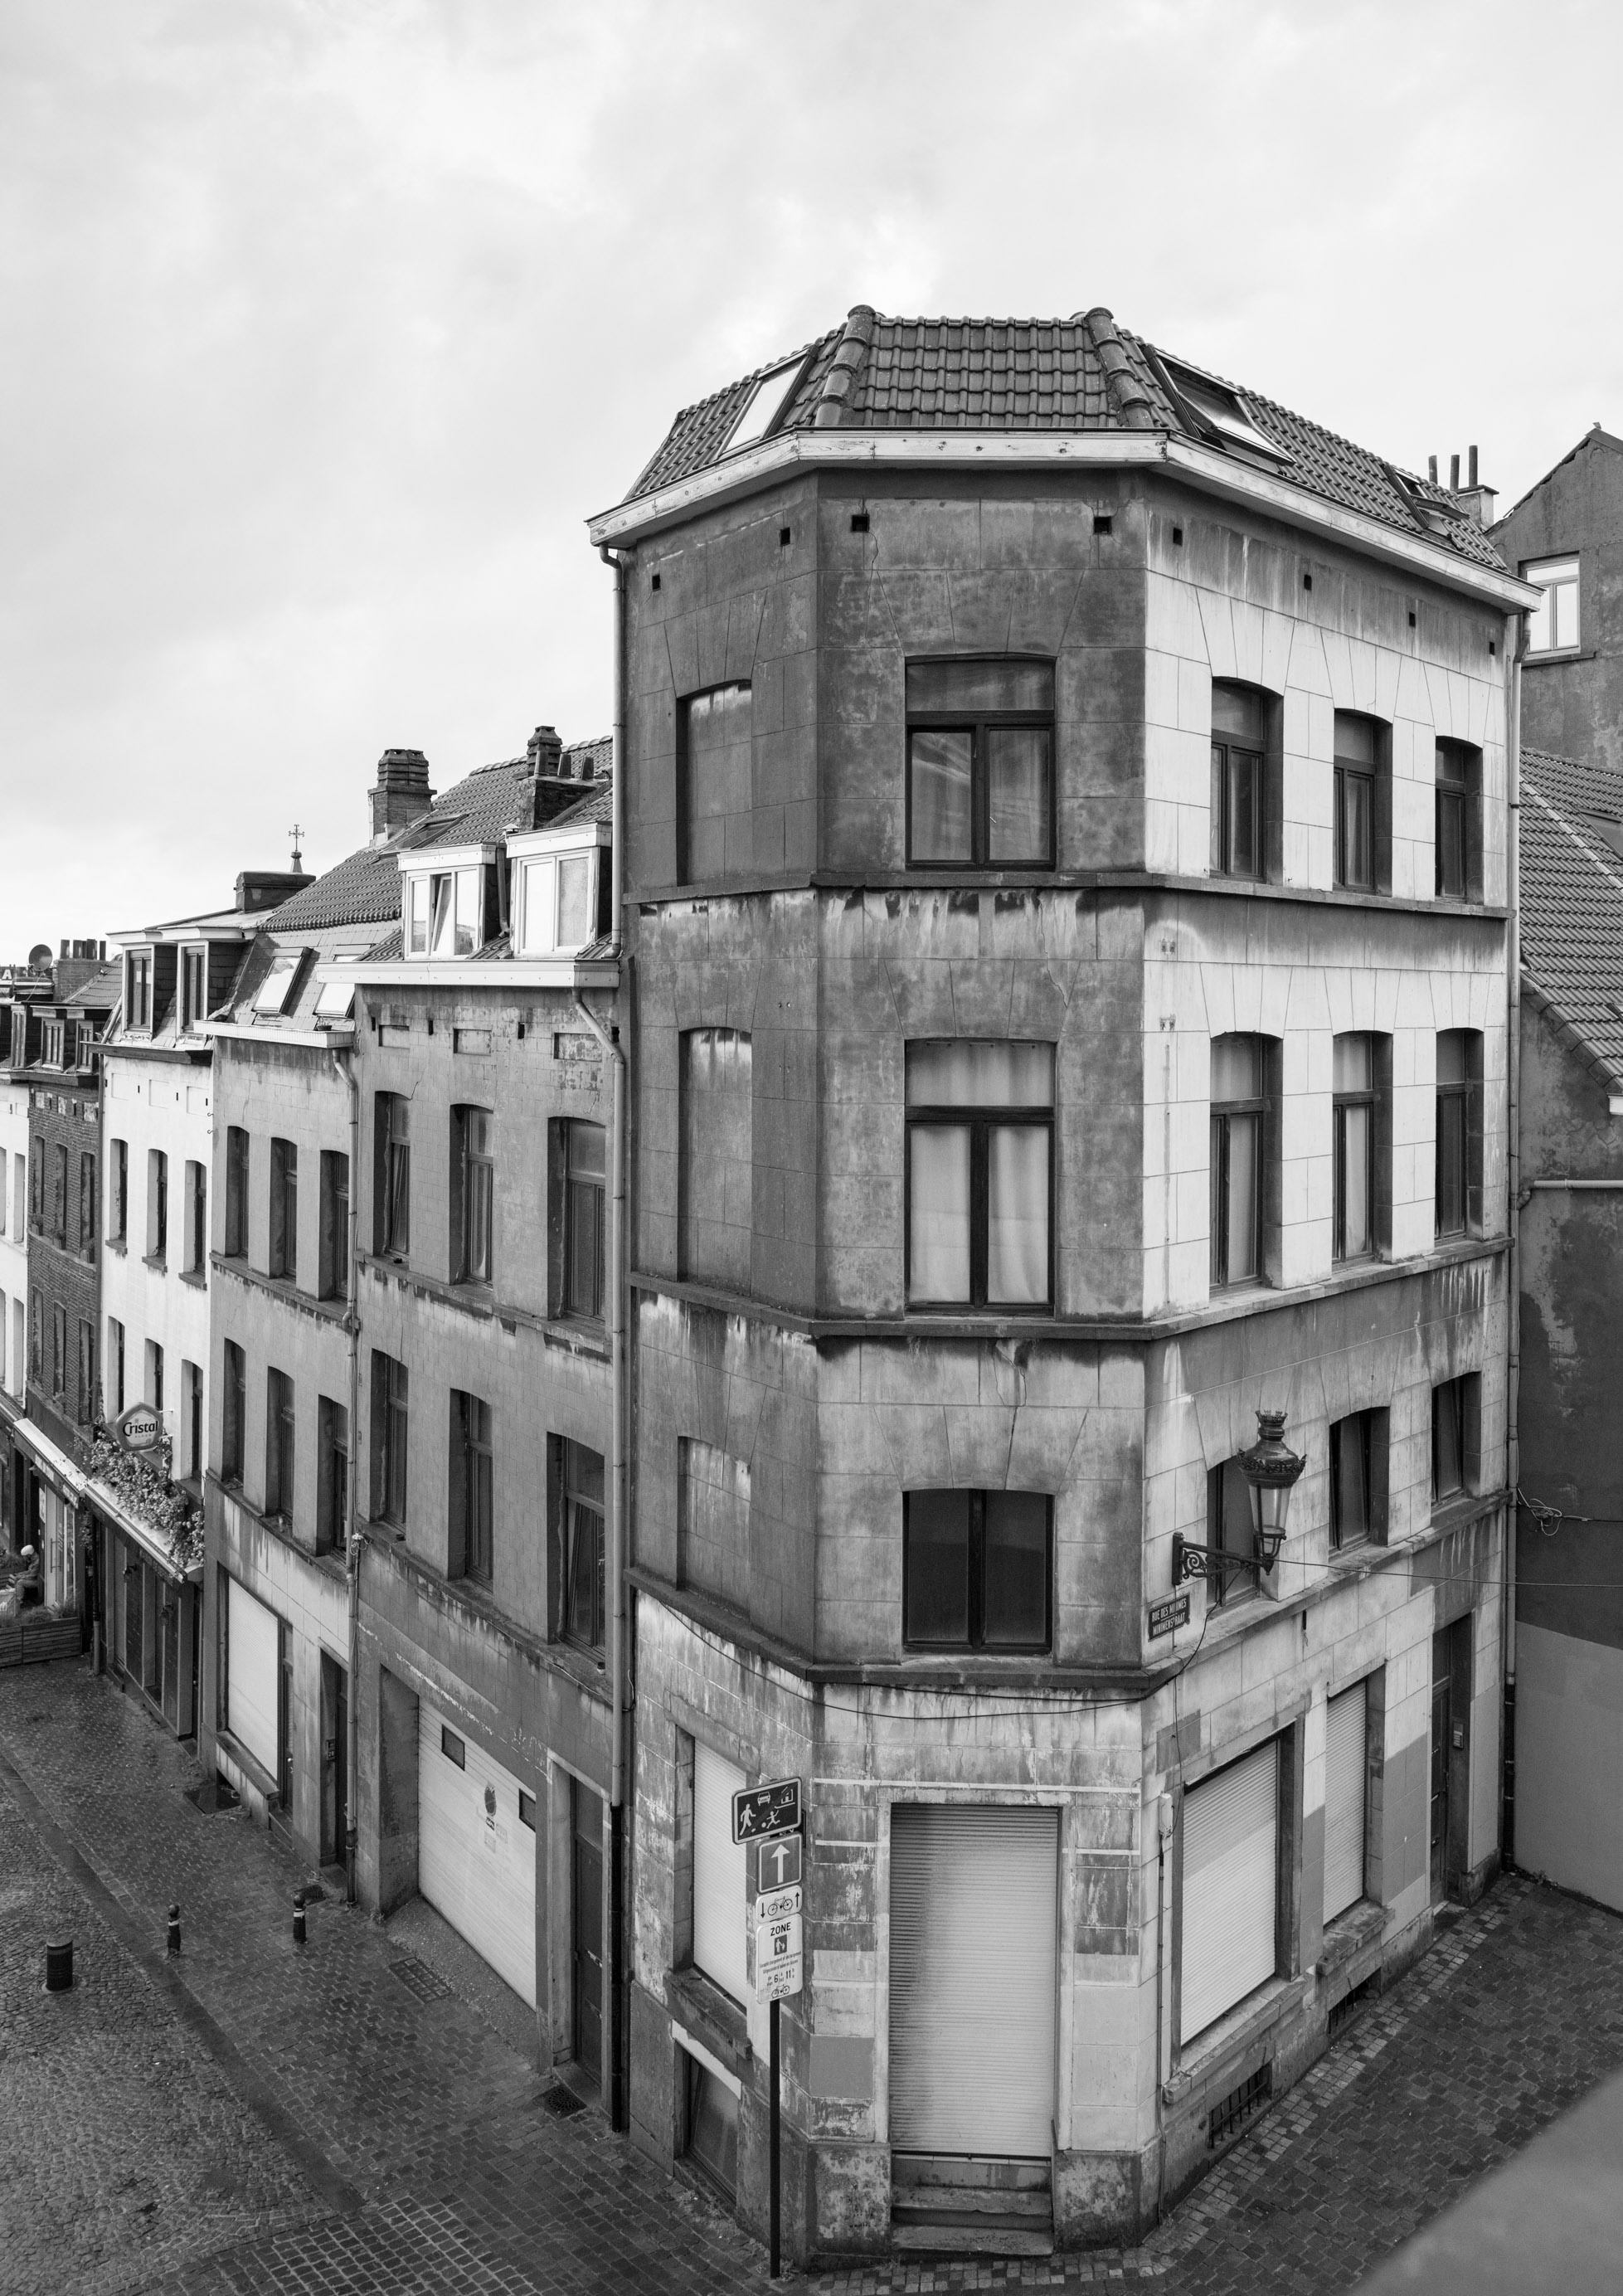 Rue de Minimes / Rue de l'Epée, Bruxelles, Belgium